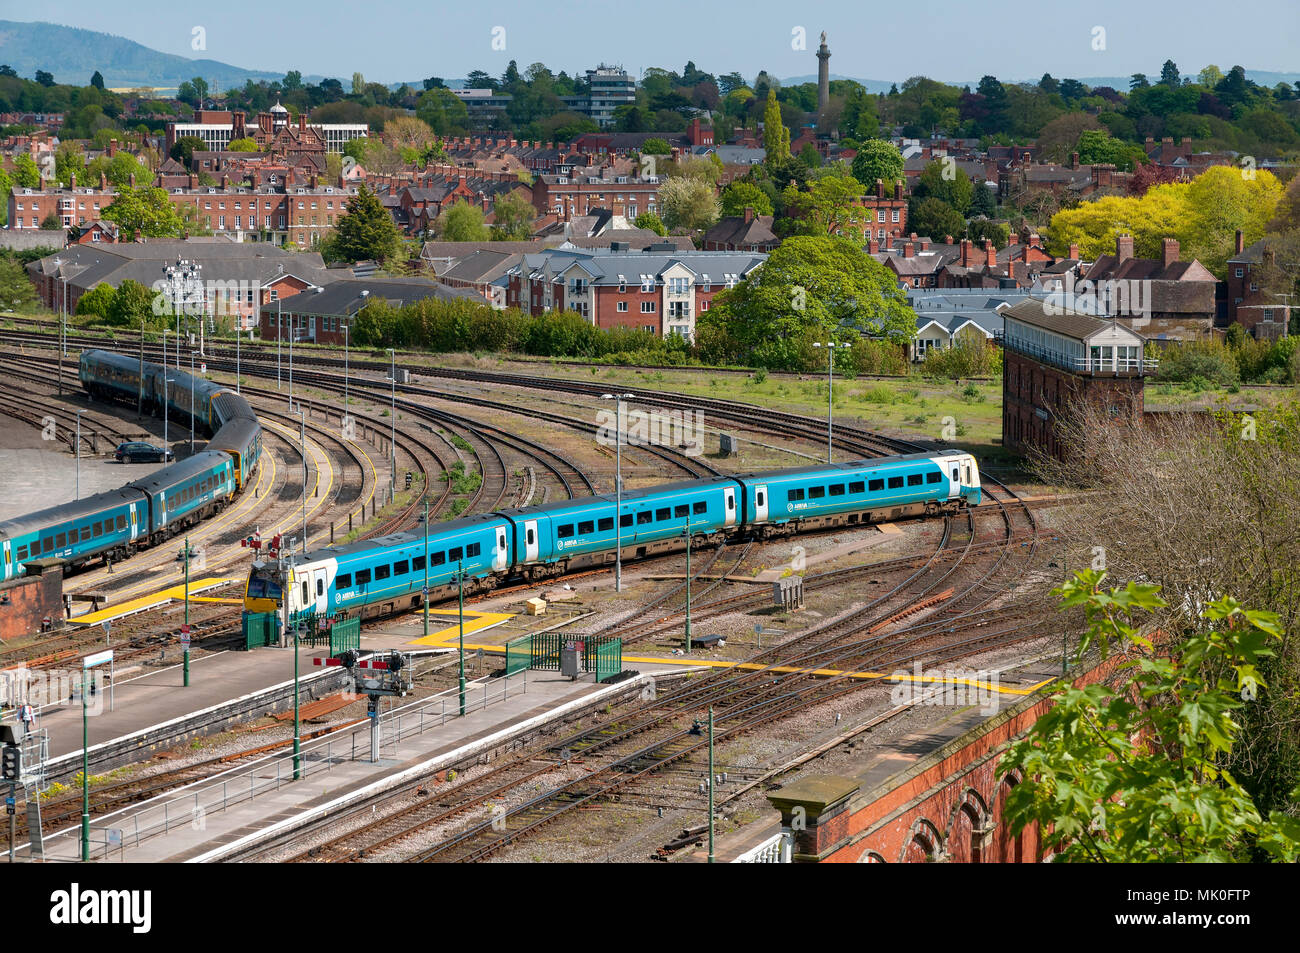 Shrewsbury Trains signalbox Stock Photo